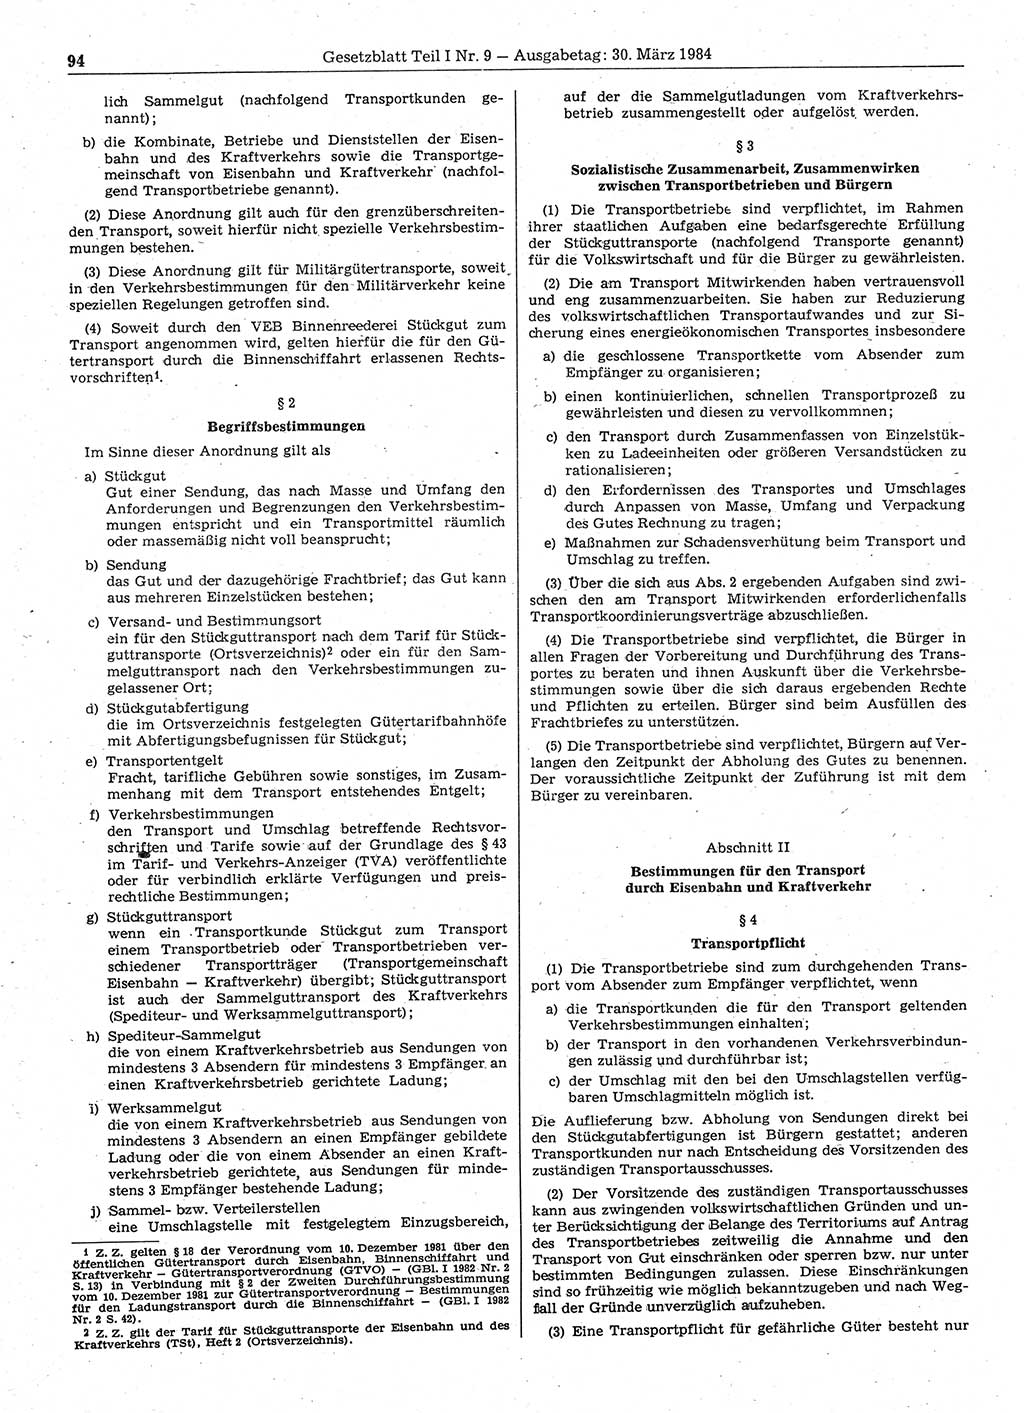 Gesetzblatt (GBl.) der Deutschen Demokratischen Republik (DDR) Teil Ⅰ 1984, Seite 94 (GBl. DDR Ⅰ 1984, S. 94)